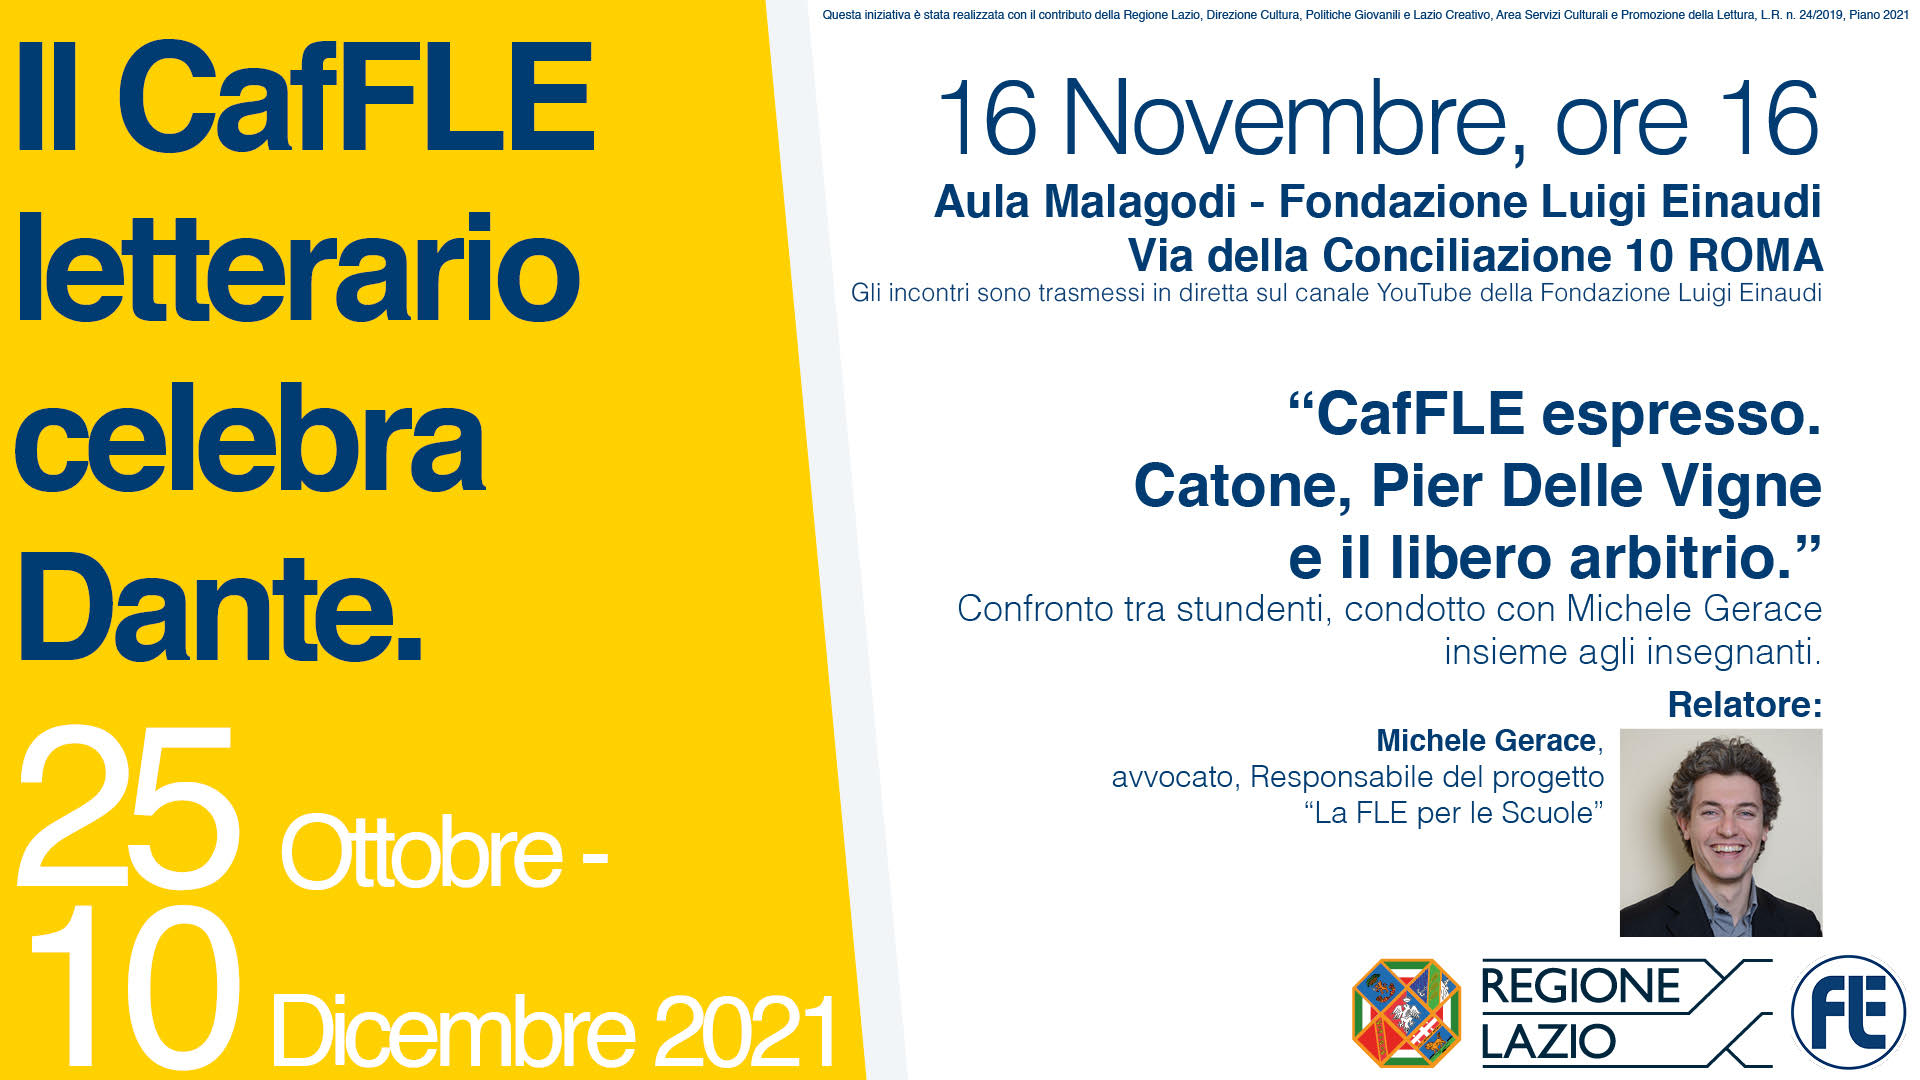 Il CafFLE letterario celebra Dante: CafFLE espresso. Catone, Pier delle Vigne, e il libero arbitrio